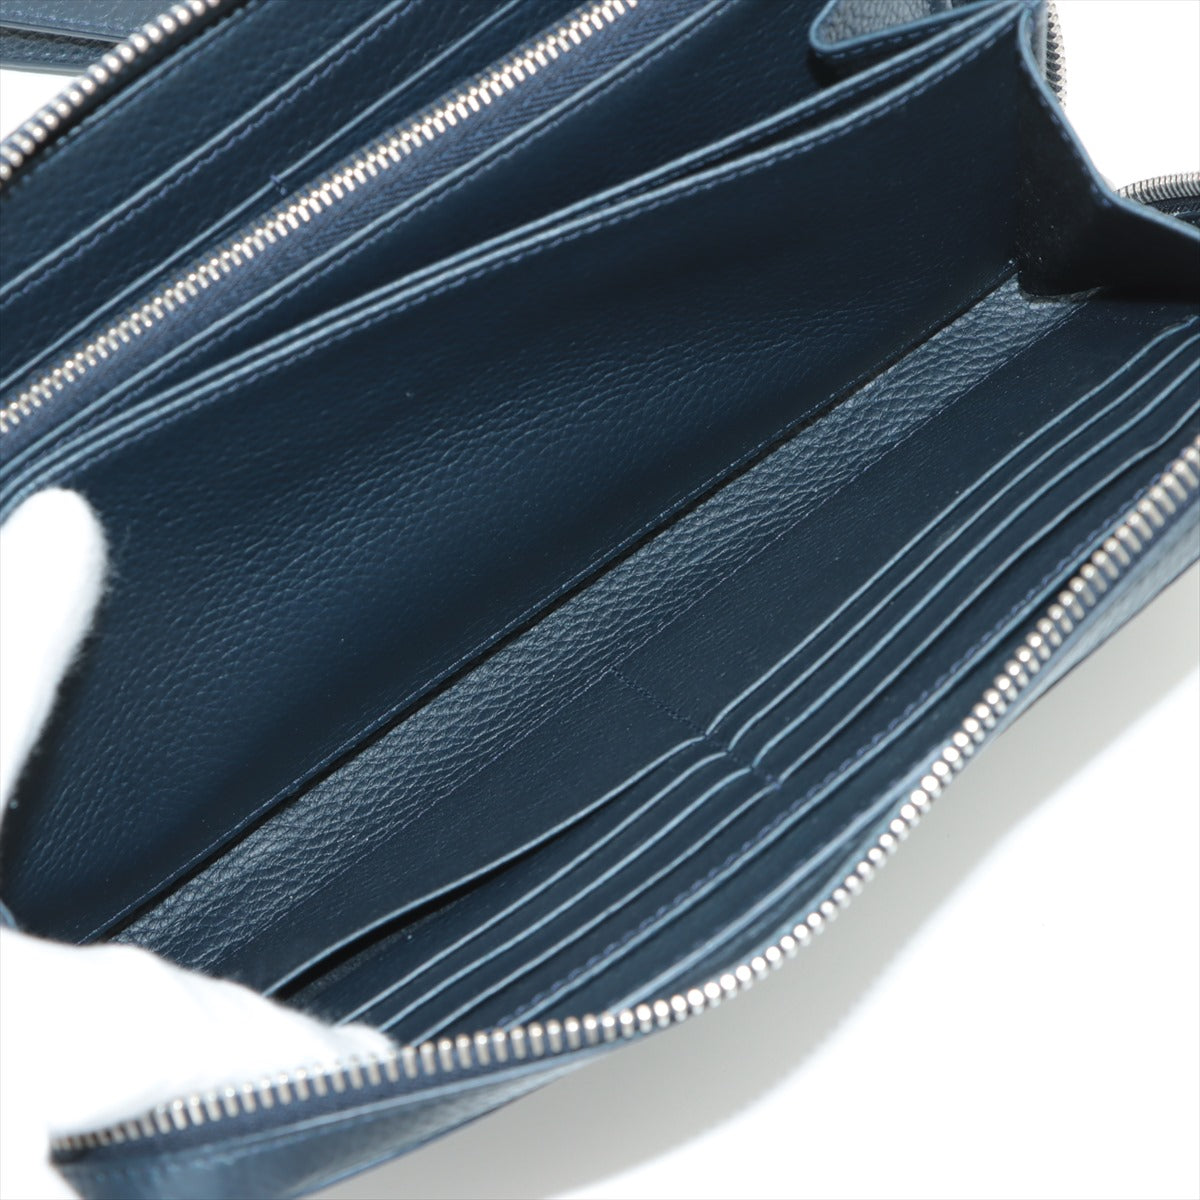 Dior Oom Organizer Travel Case Leather Round  Wallet Navy Navi